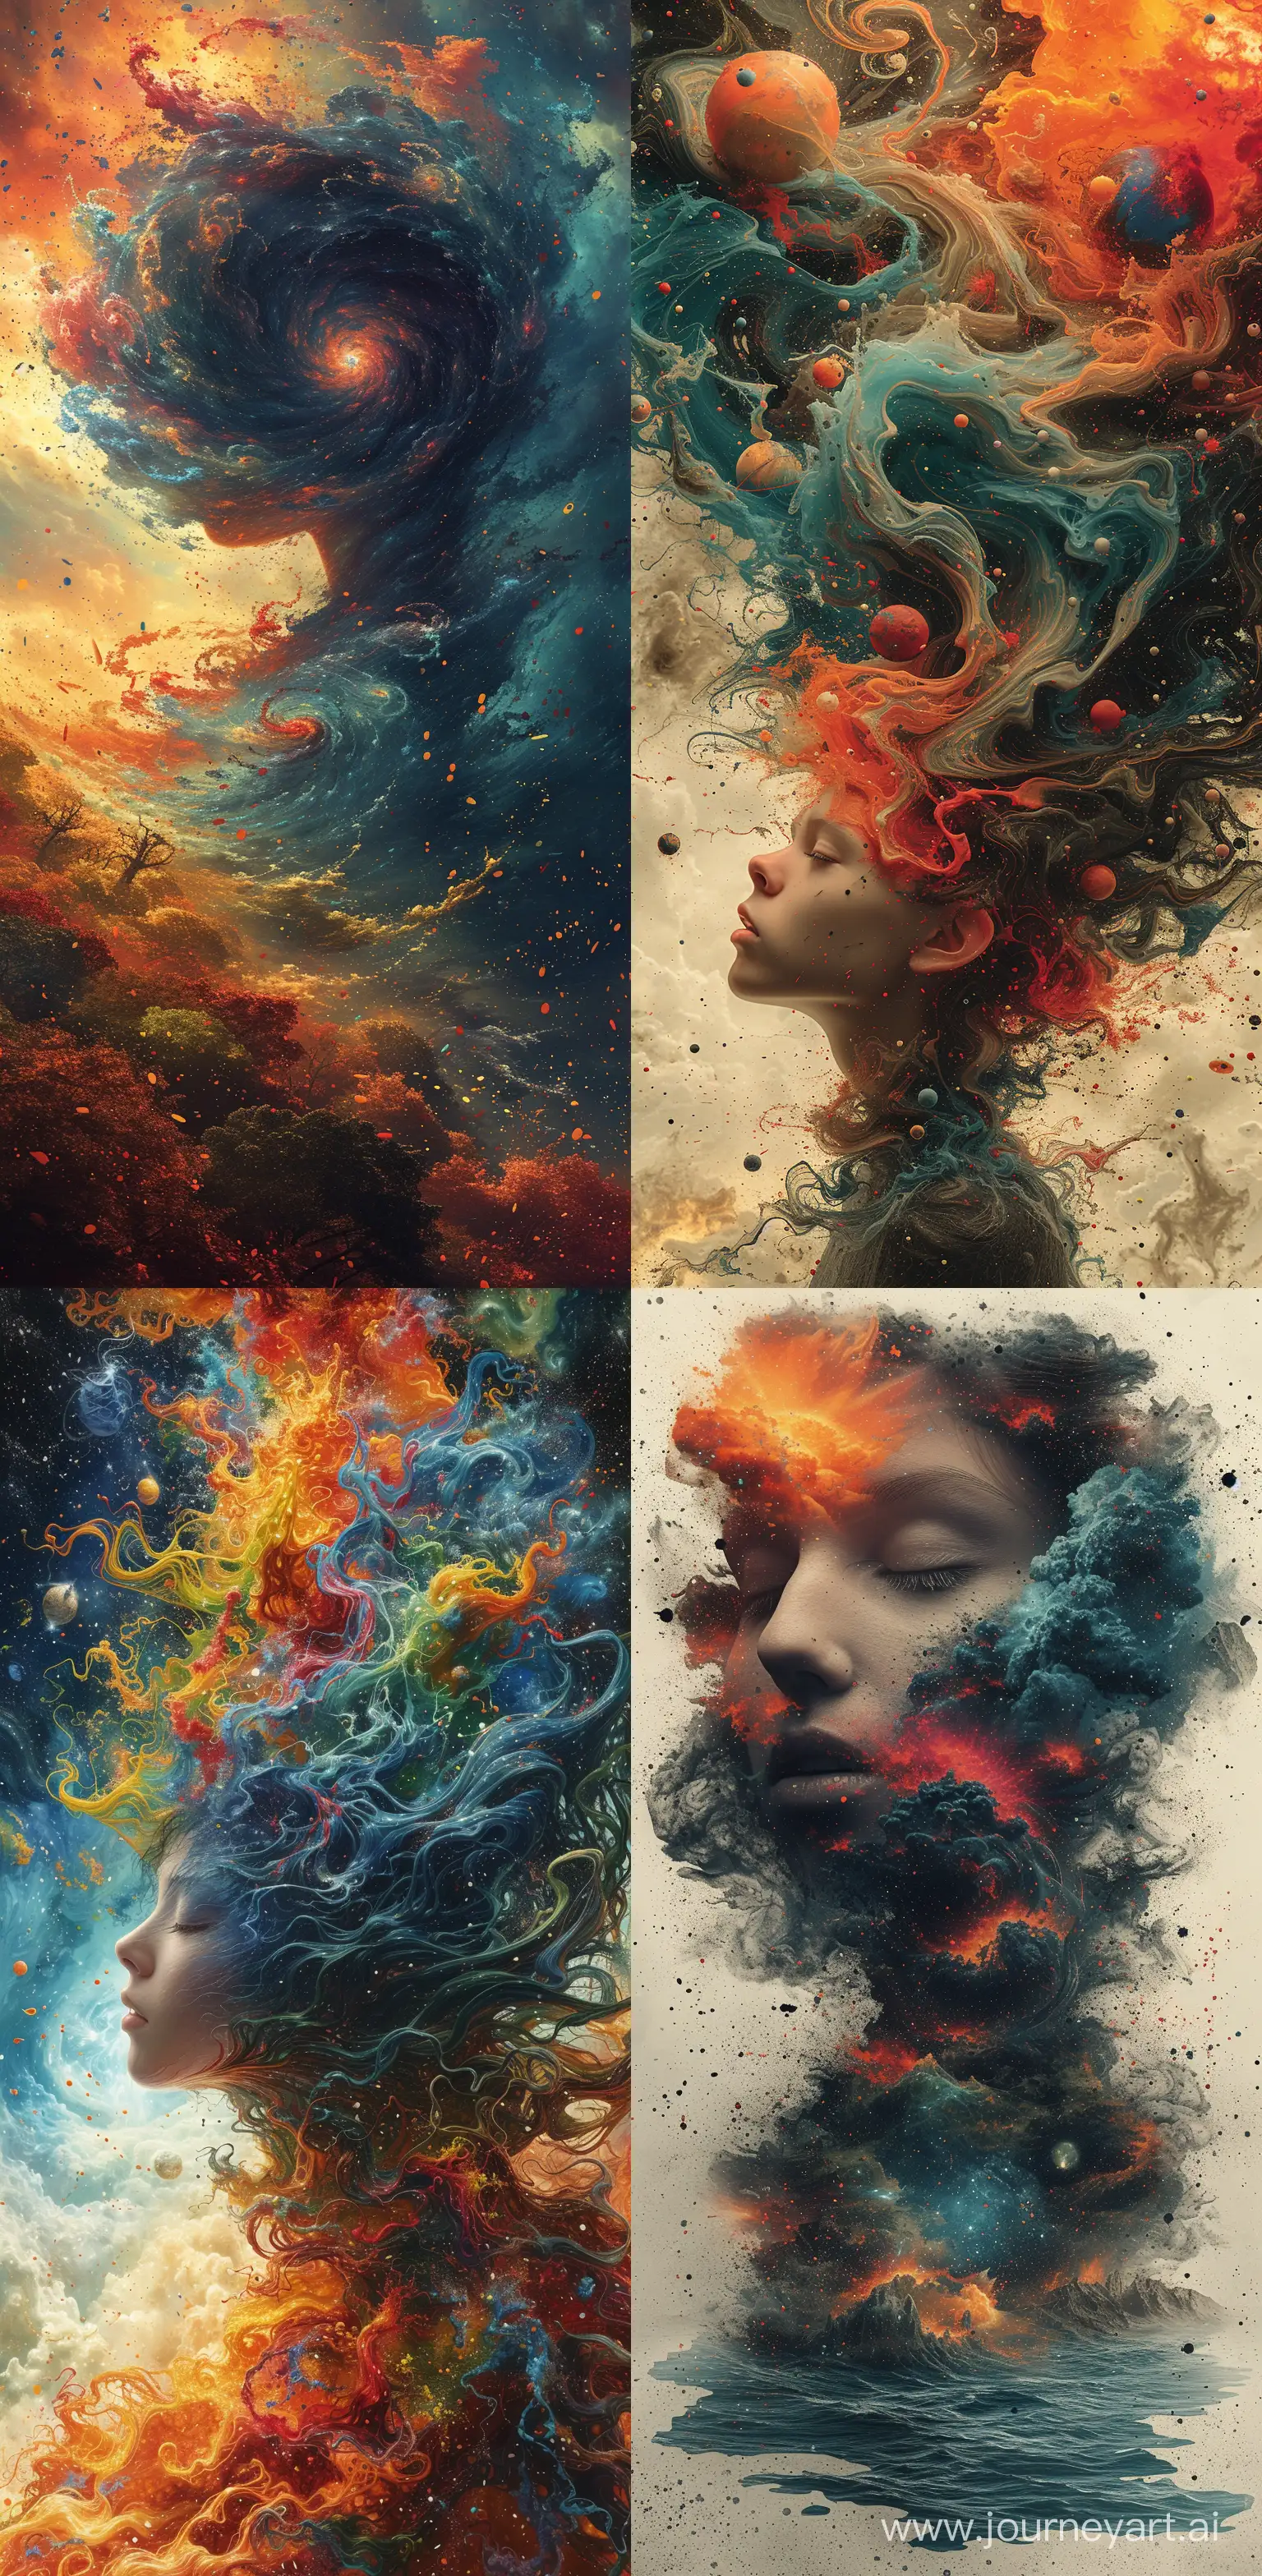 Surreal-Womans-Head-in-Swirling-Cosmic-Landscape